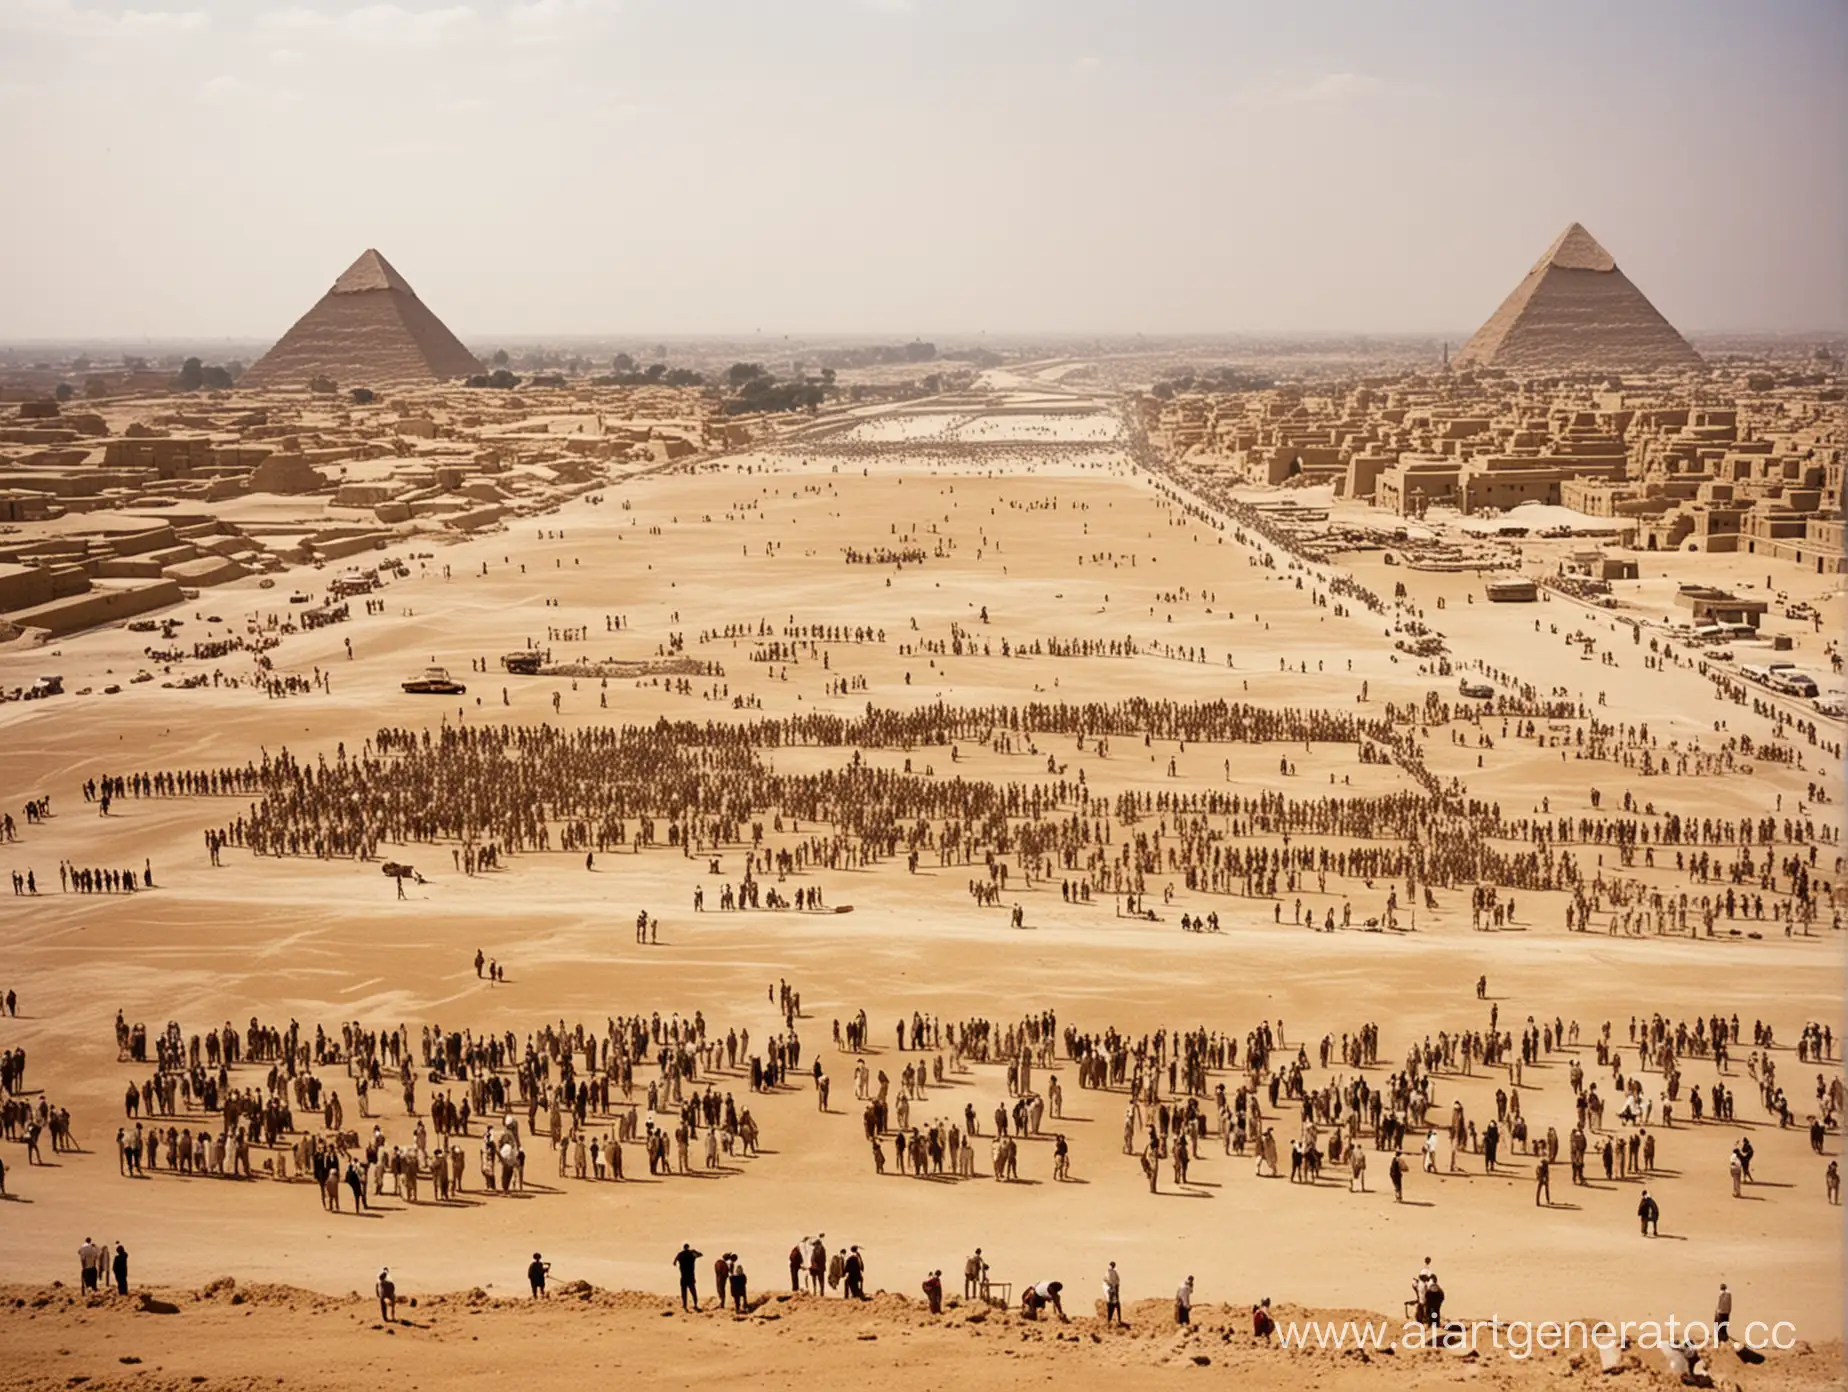 начало строительства пирамид в Гизе,десятки тысяч рабочих на стройке,фараон осматривает работу из далека.